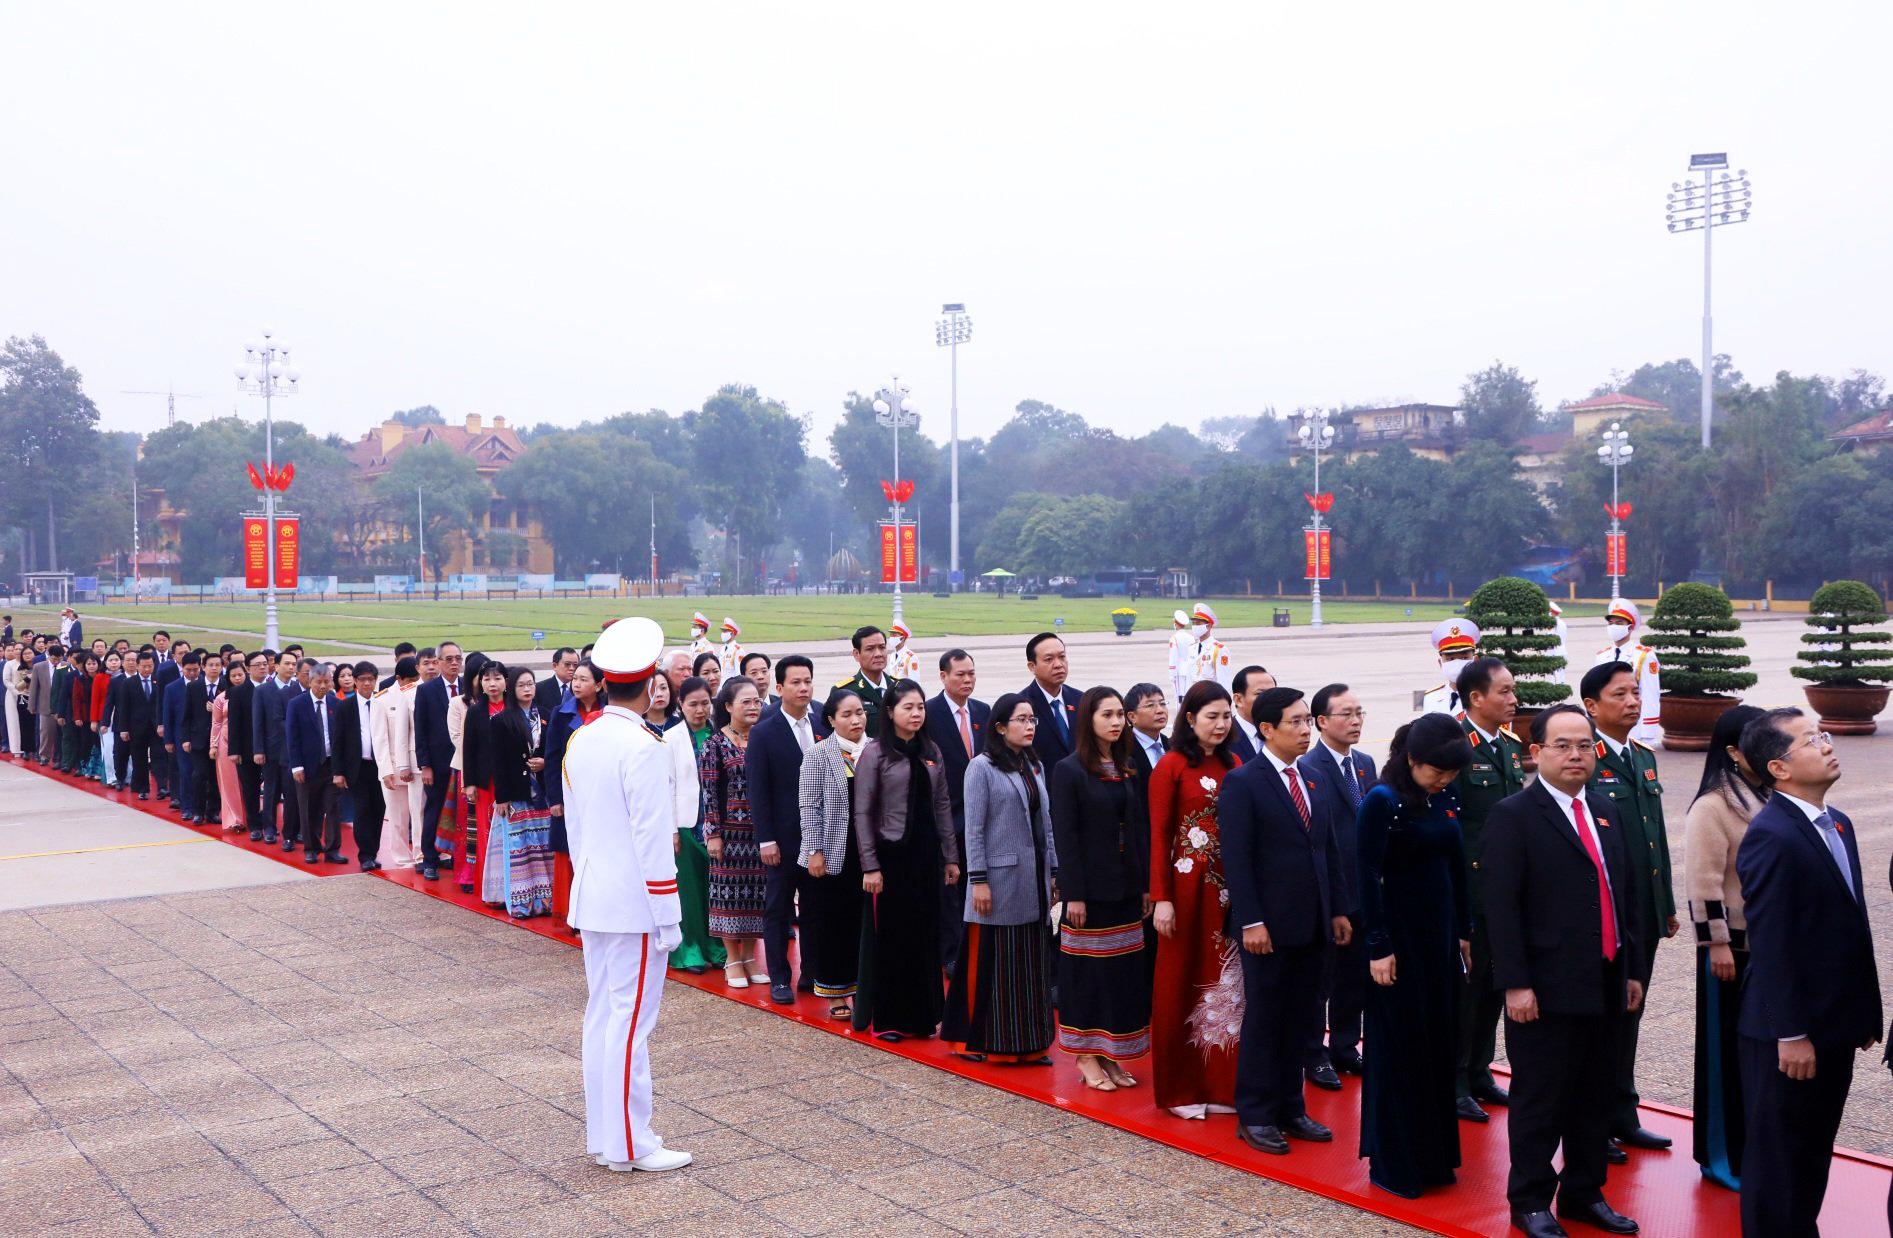 Các đại biểu vào Lăng viếng Chủ tịch Hồ Chí Minh trước giờ khai mạc kỳ họp